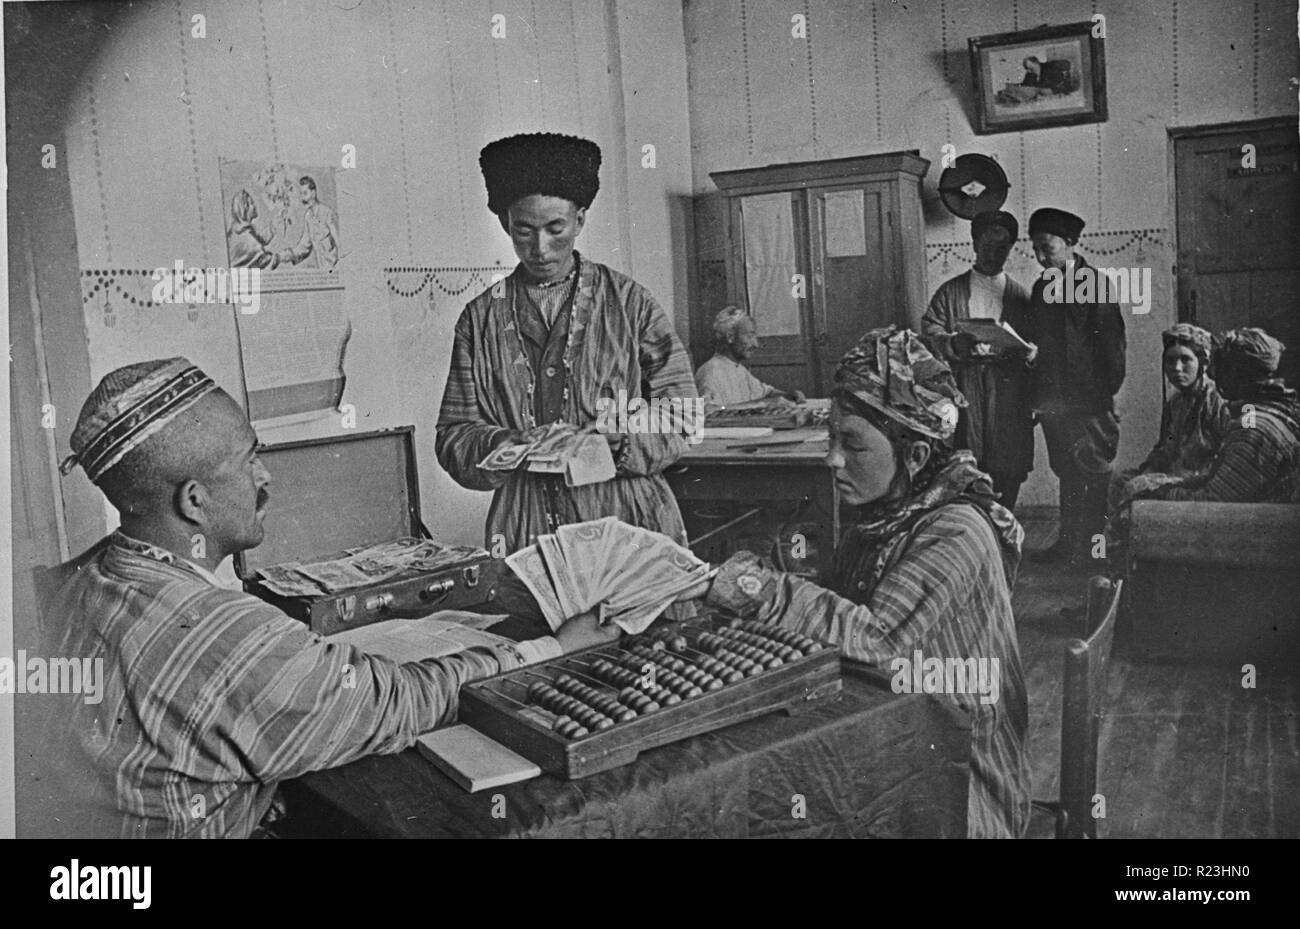 Turkmenischen kollektive Landwirten, die einen Teil ihrer jährlichen Einnahmen aus den Gewinnen der Farm in der Farm Administration Office in der UDSSR (Union der Sozialistischen Sowjetrepubliken) zwischen 1930 und 1940 Stockfoto